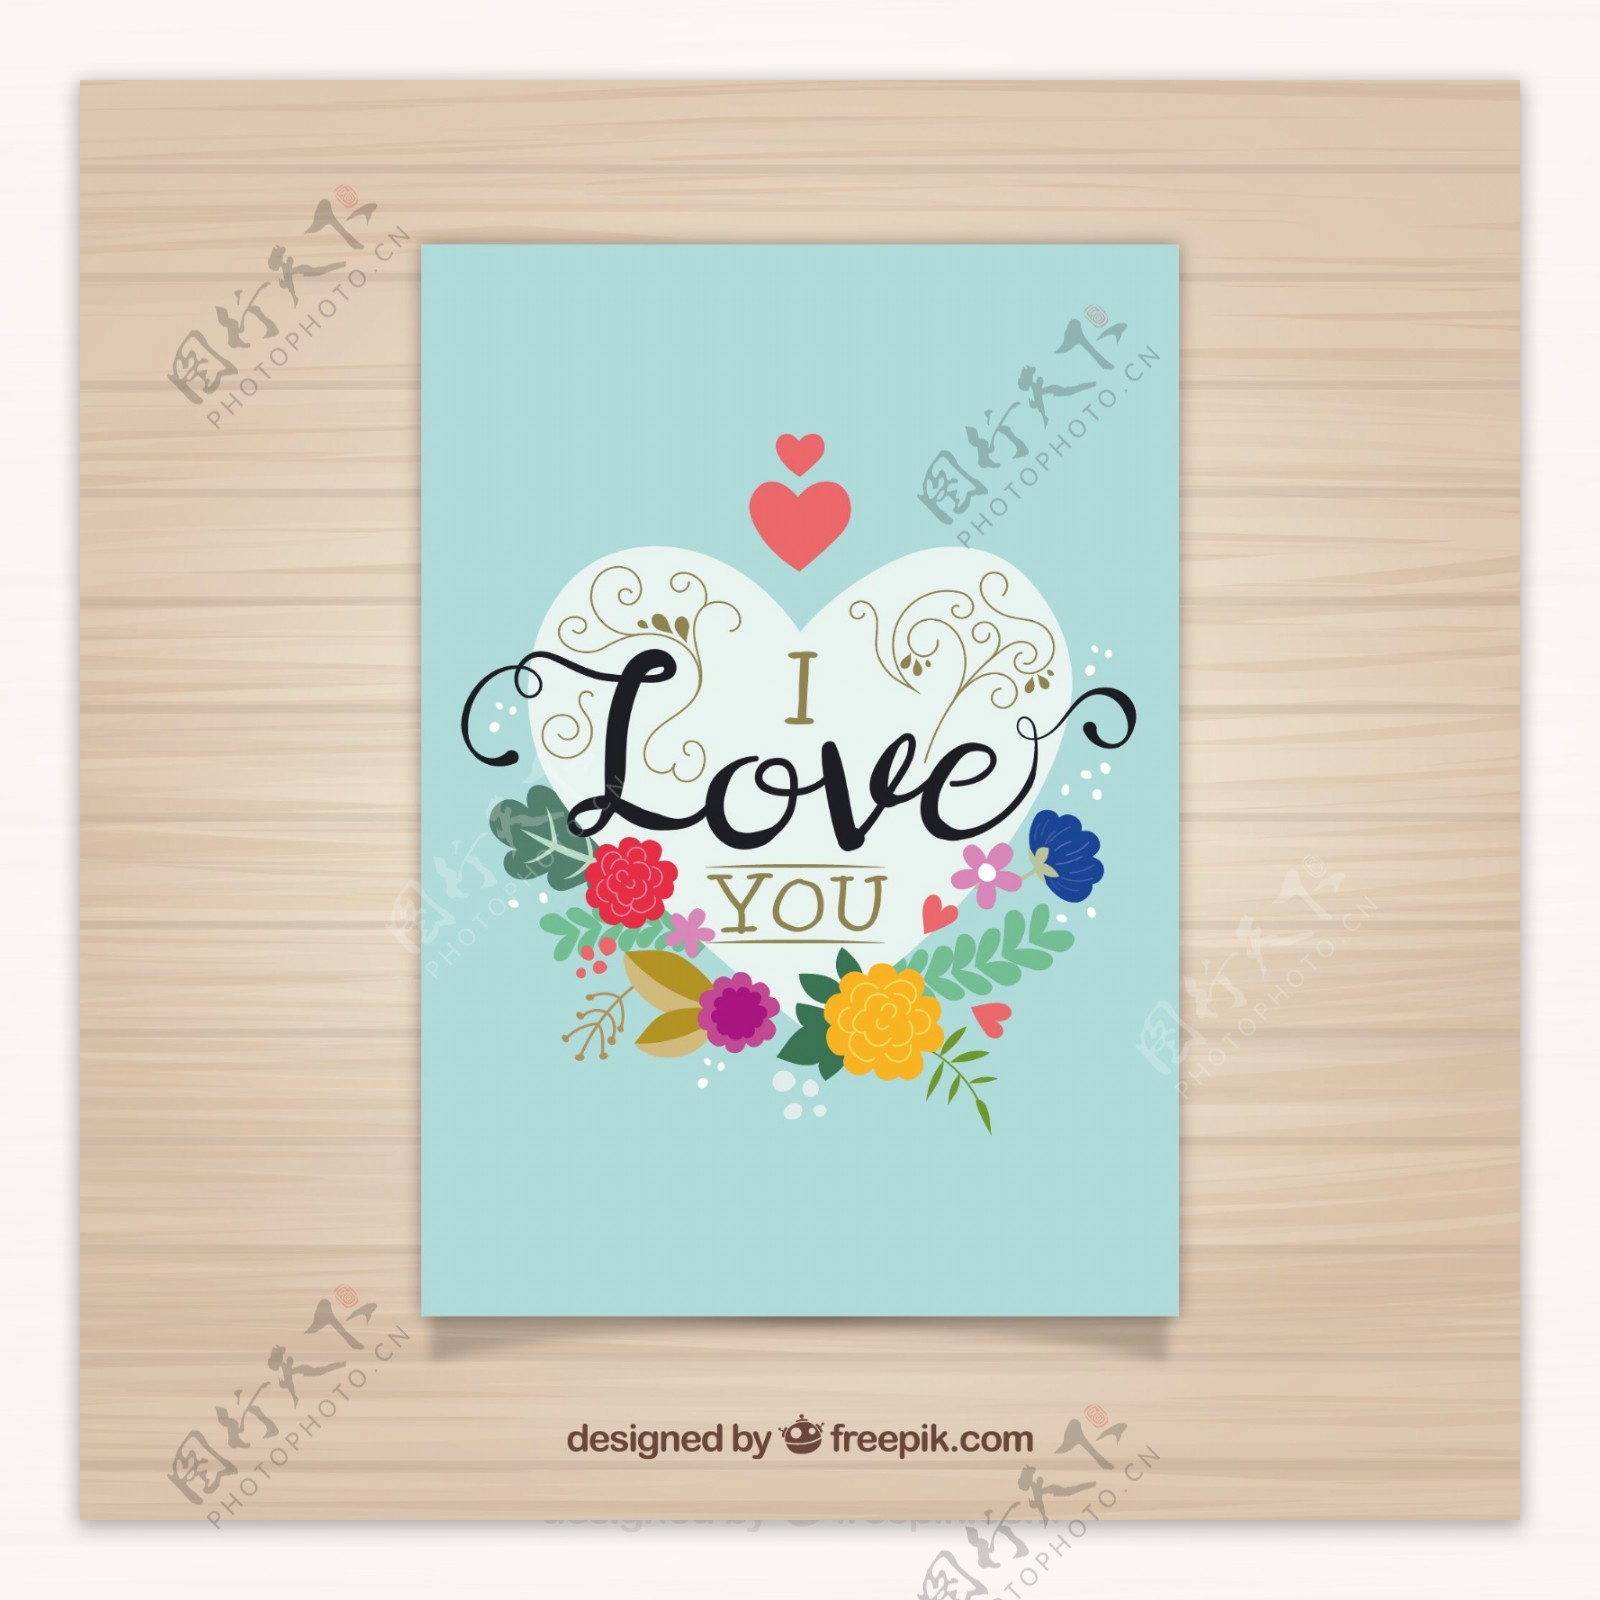 用一颗被鲜花包围的心的爱情卡片